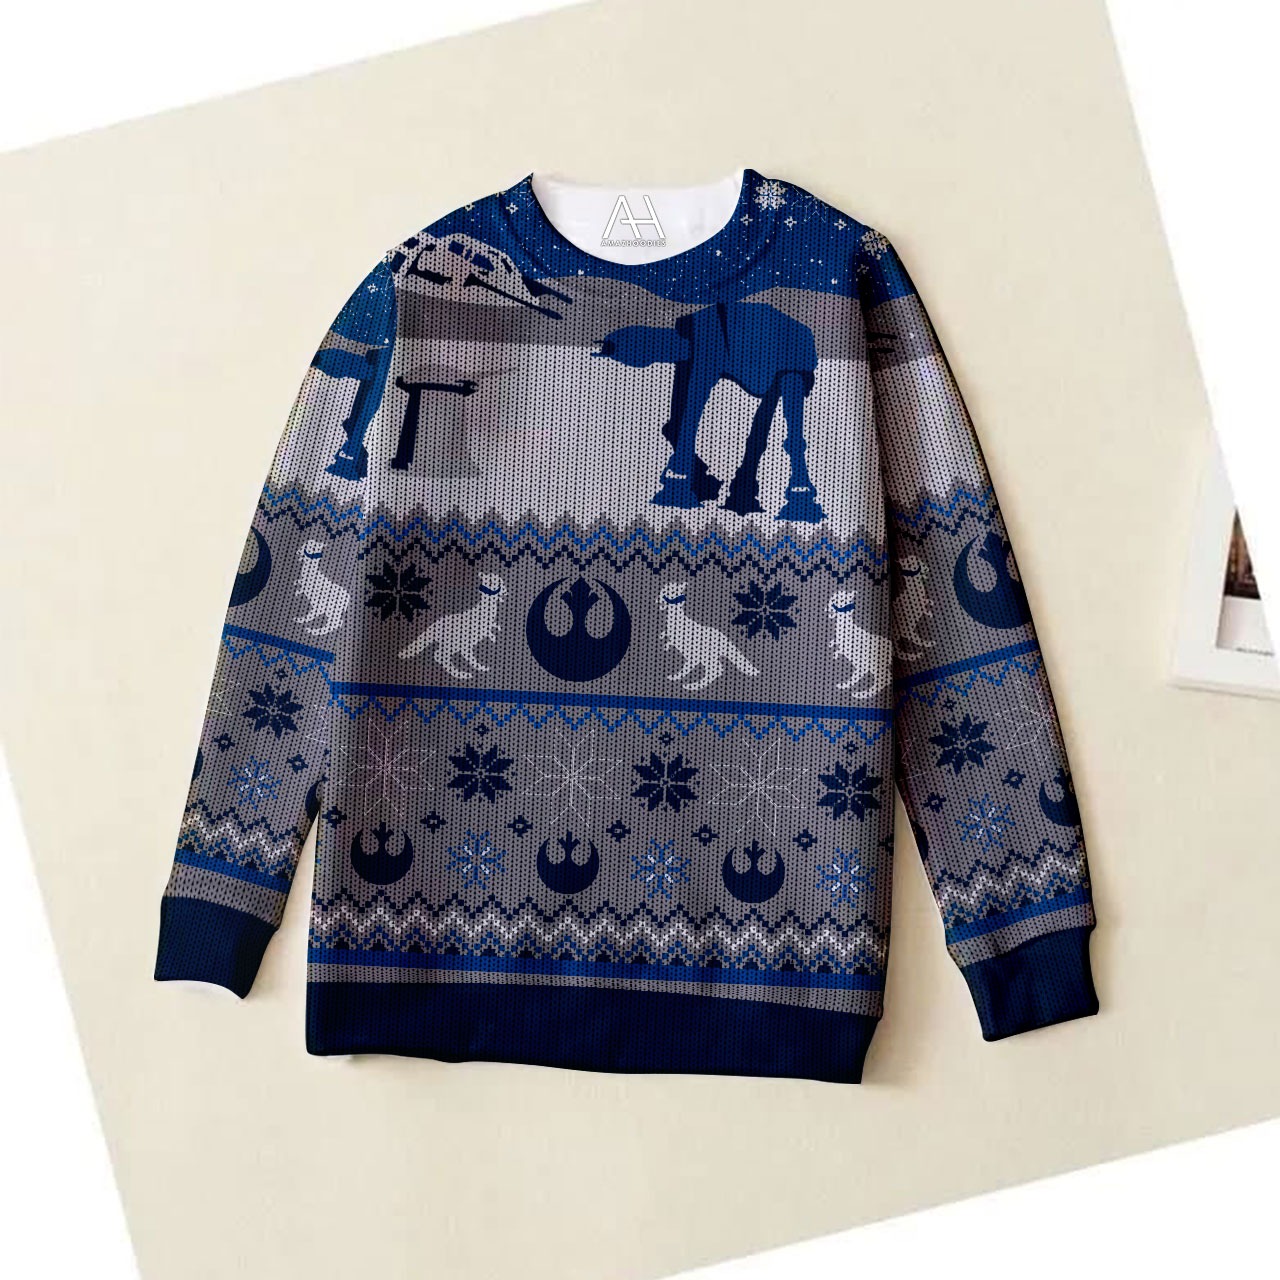 Star Wars AT-AT Walker Ugly Christmas Sweater 1